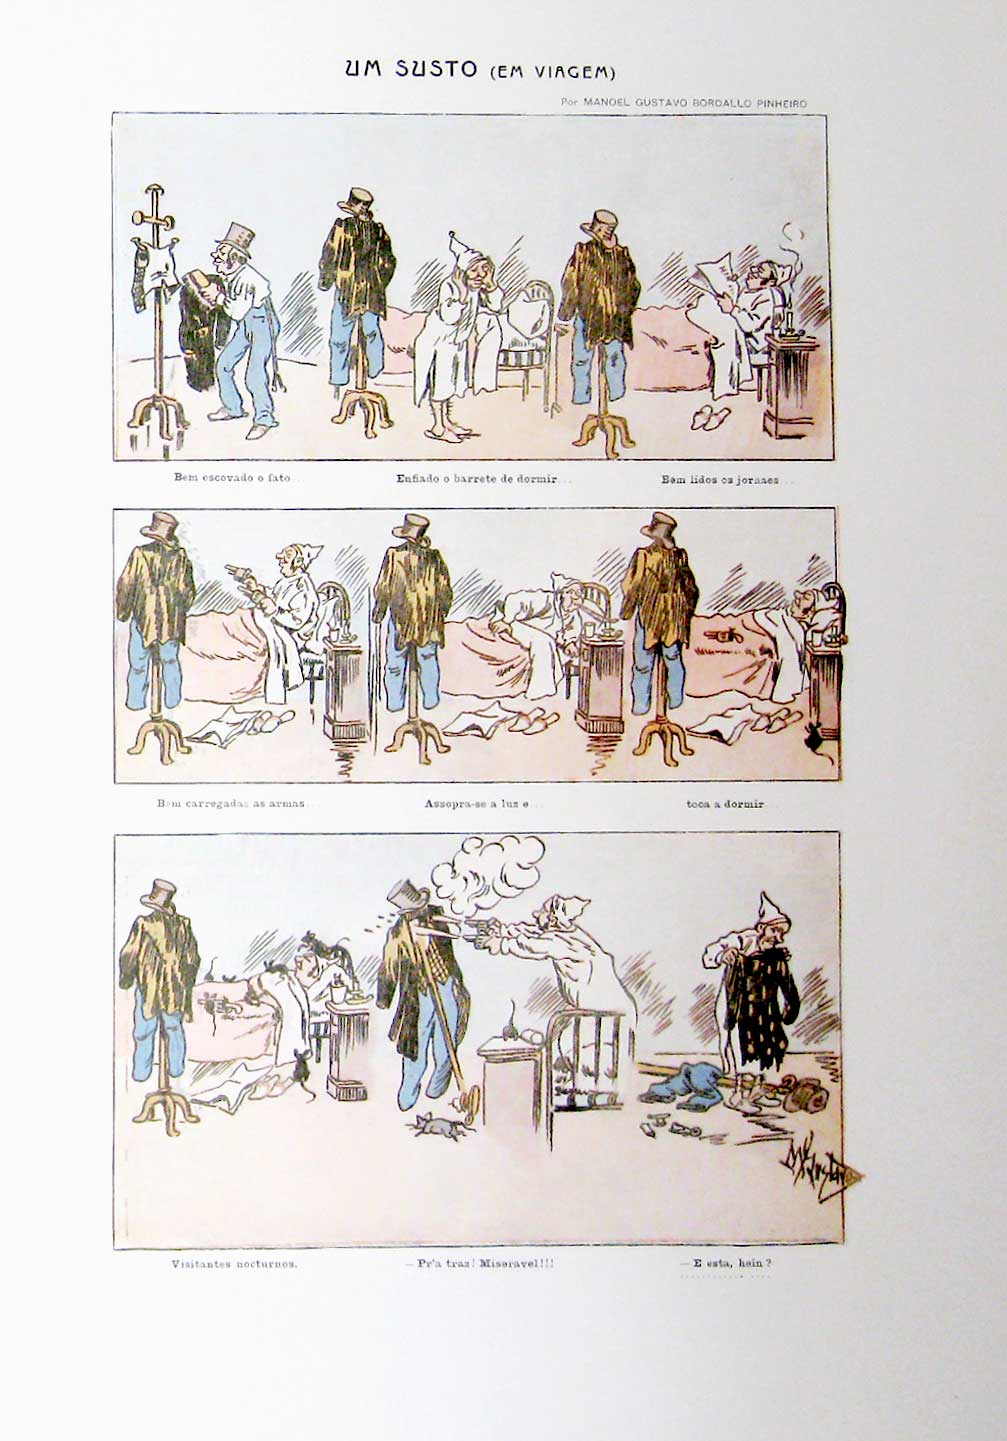 Banda desenhada “Um Susto em Viagem”, ilustração de Manuel Gustavo Bordalo Pinheiro para o Diário de Notícias Ilustrado Natal 1905 